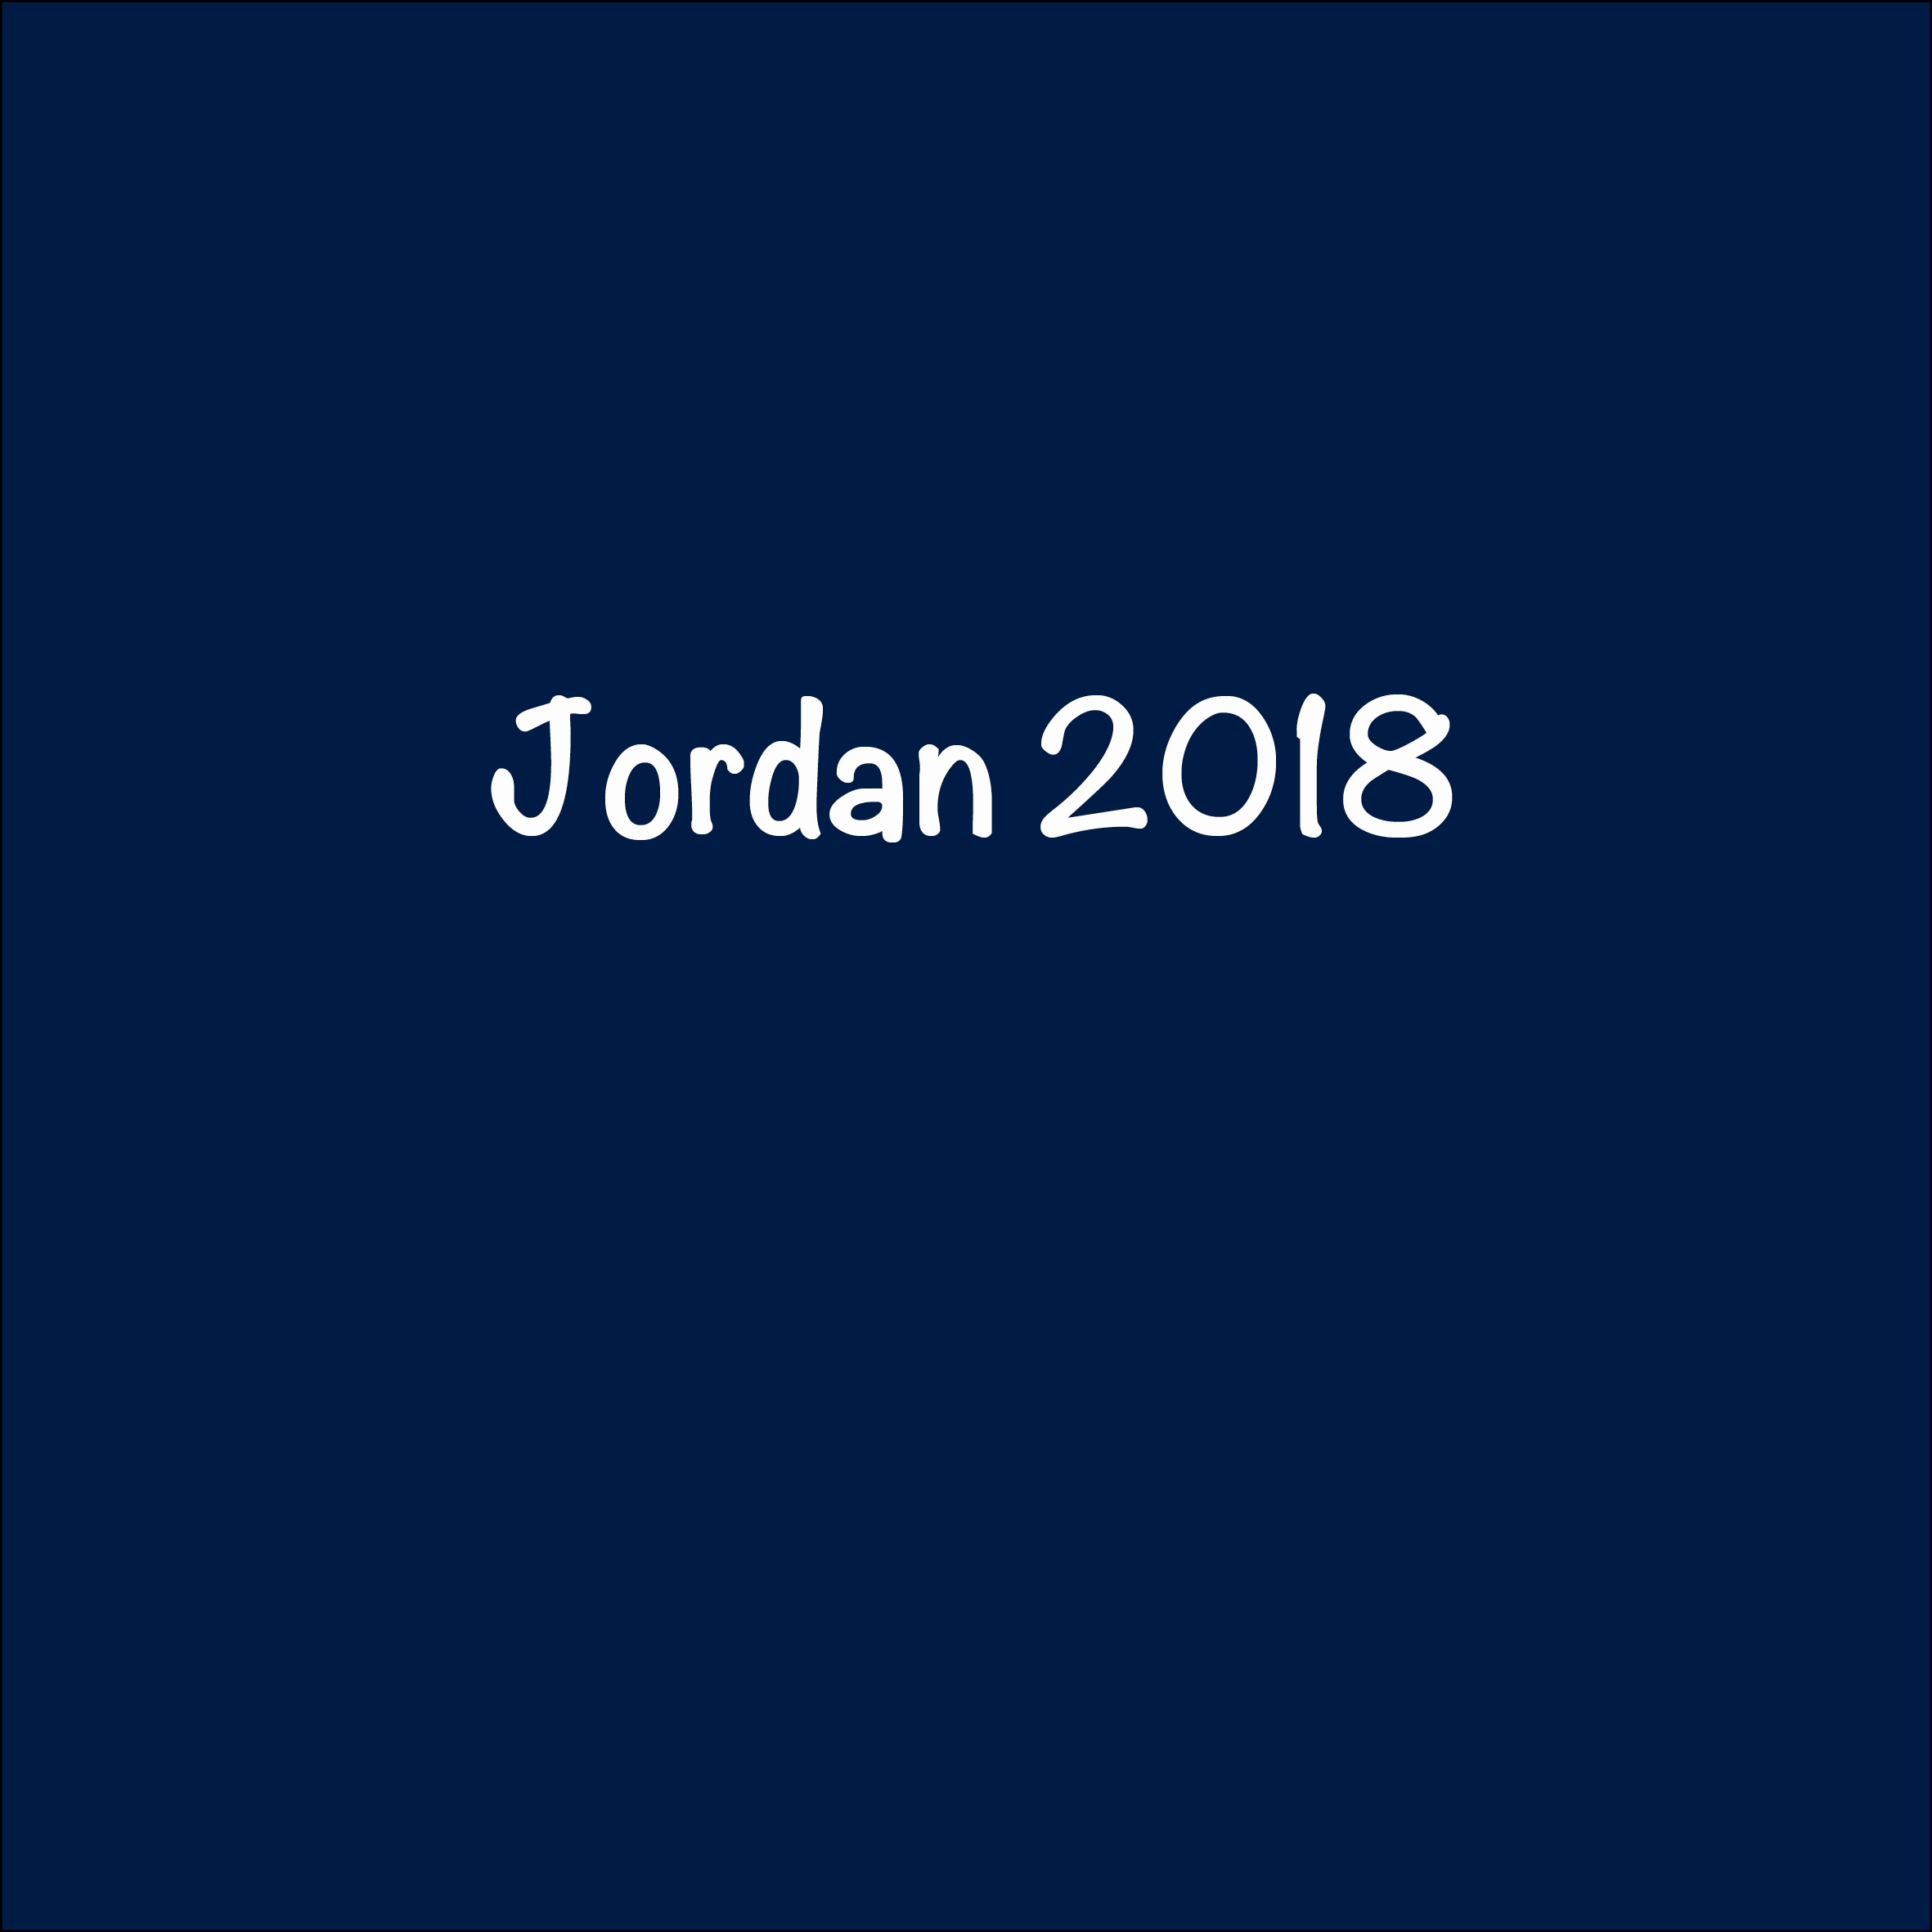 Jordan 2018